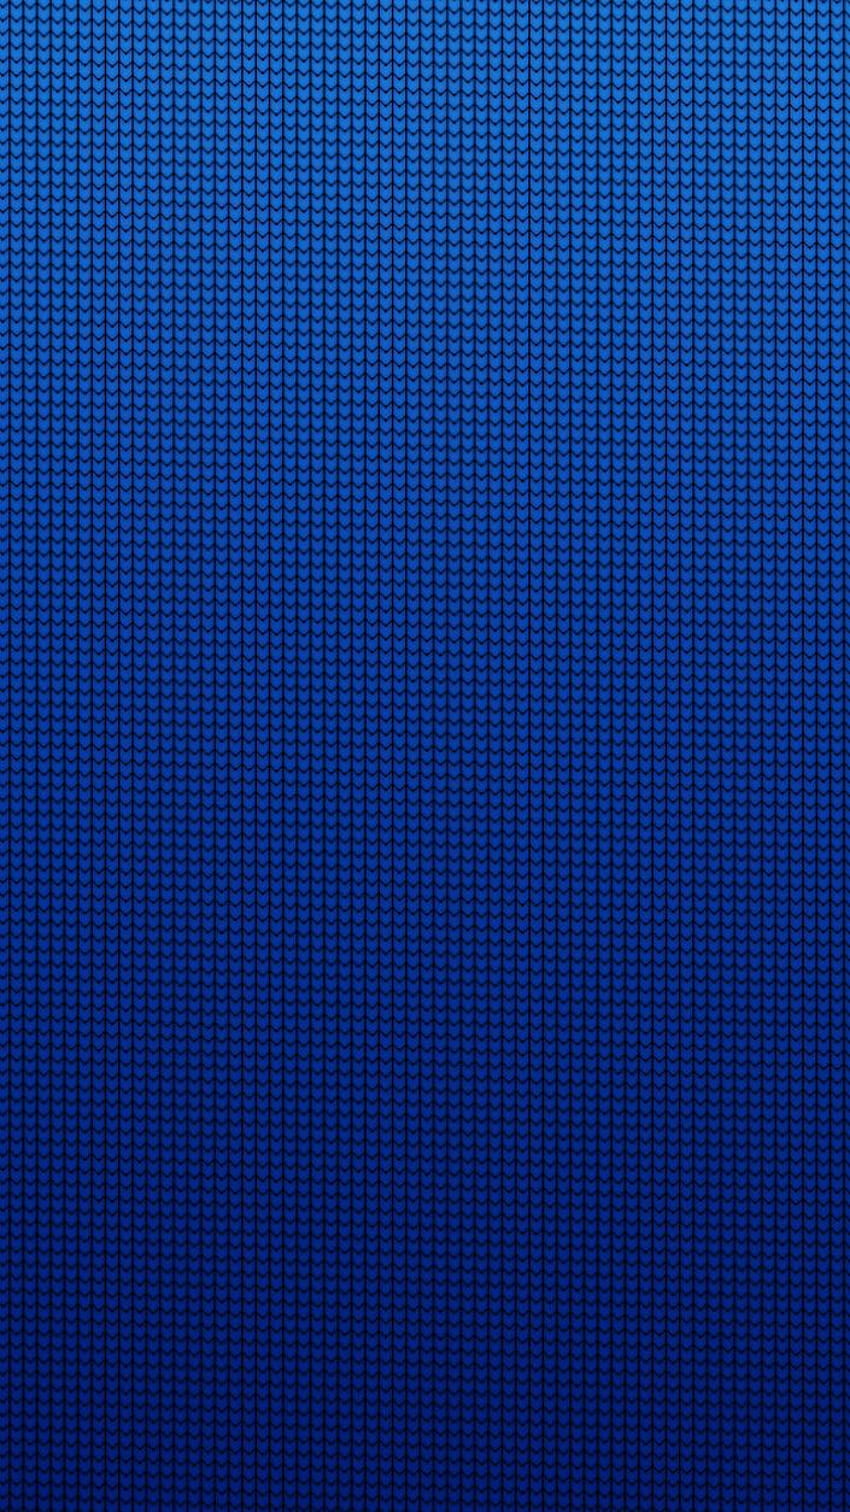 Hình nền Blue Abstract Art background sẽ khiến cho chiếc điện thoại của bạn trở nên đẹp mắt hơn bao giờ hết, với sự pha trộn màu sắc độc đáo và tinh tế. Hãy trang trí cho màn hình điện thoại của bạn với những hình nền Blue Abstract Art background để tạo sự khác biệt và thu hút mọi ánh nhìn.